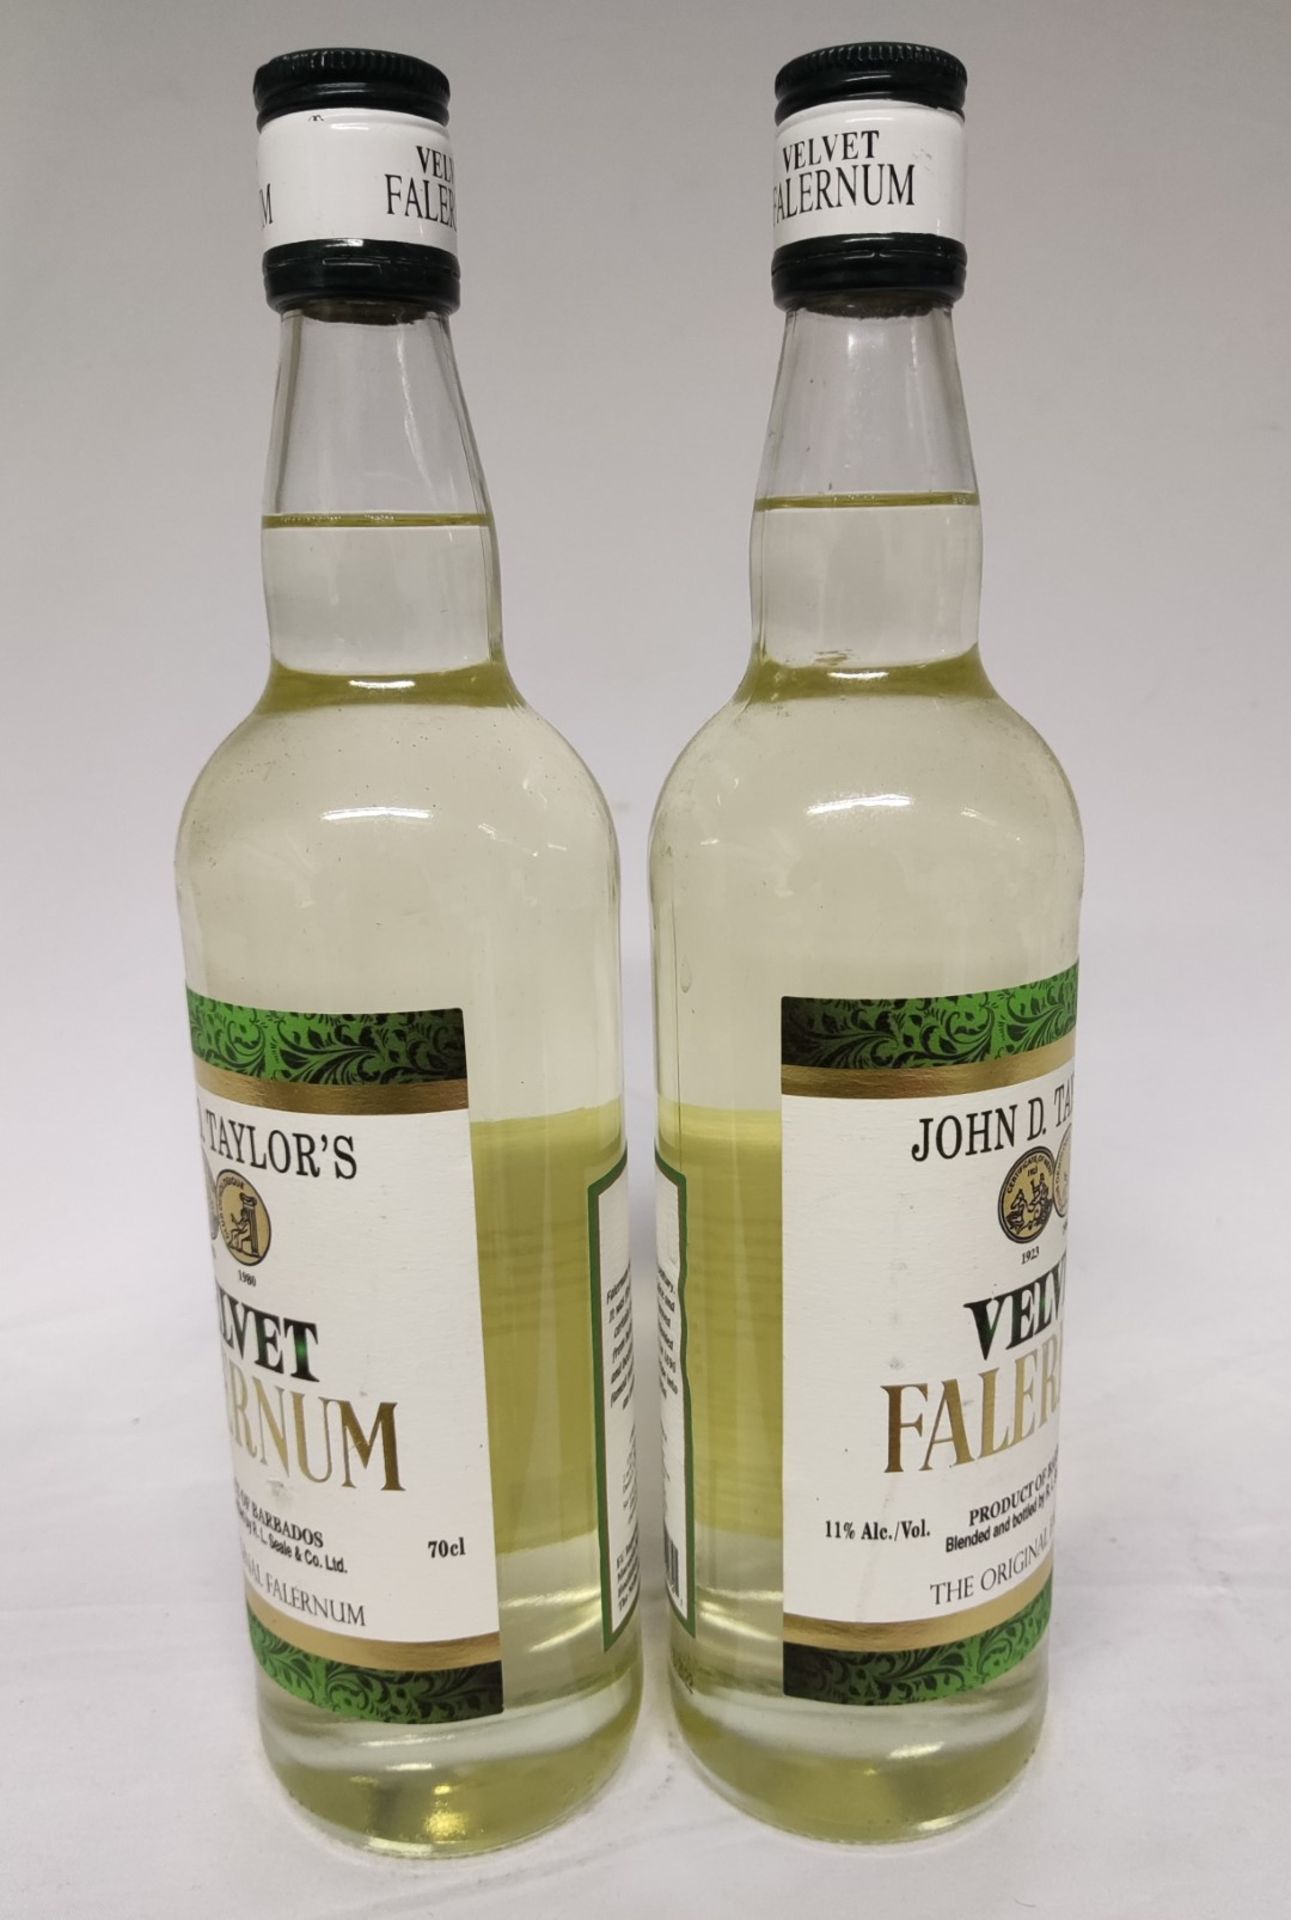 2 x Bottles of John D. Taylor'S Velvet Falernum 70cl Bottles - RRP £36 - Image 6 of 6